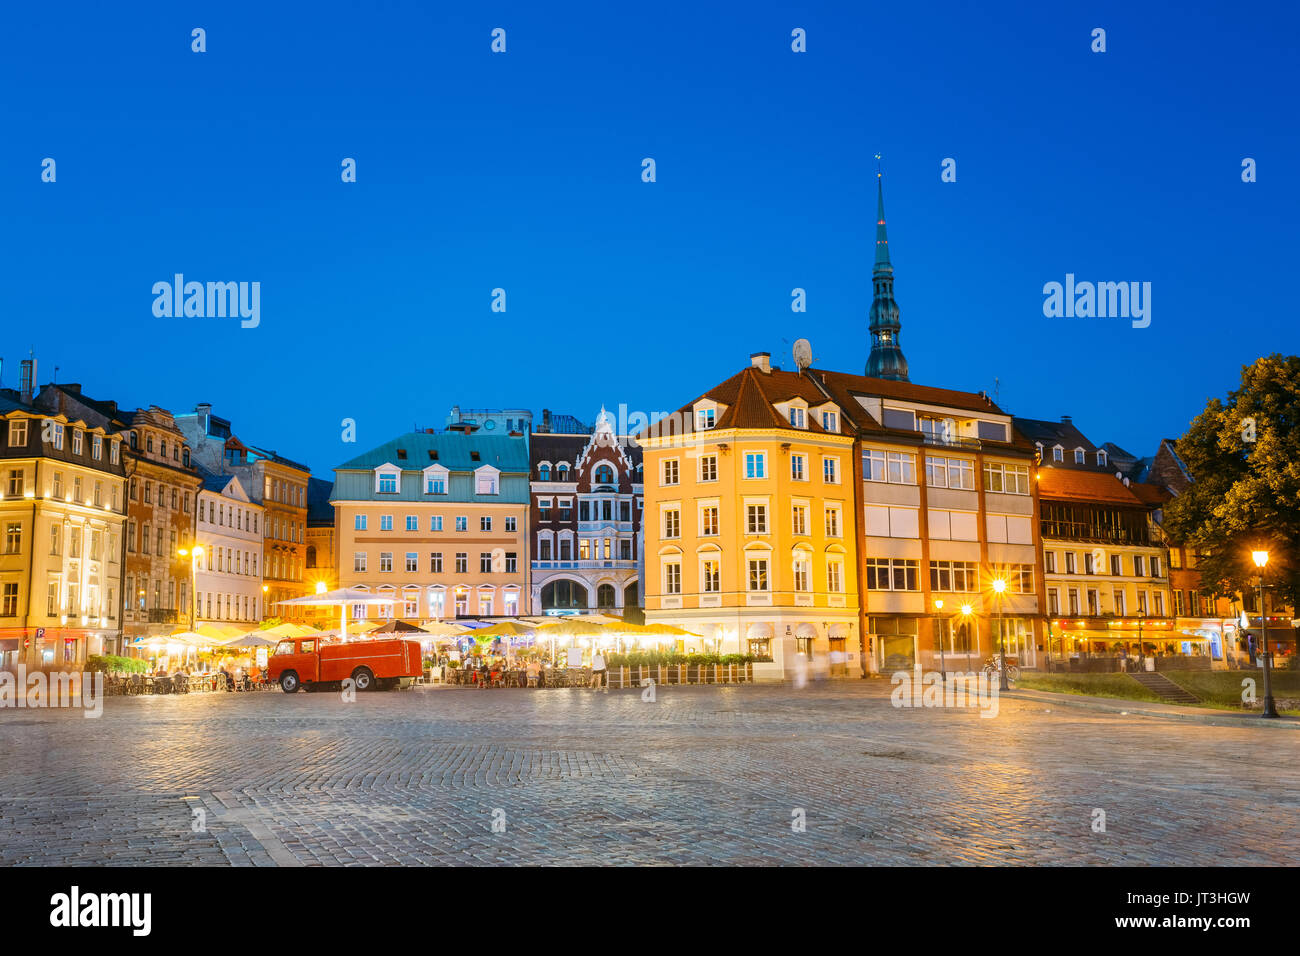 Riga, Lettonia. Vista di antichi edifici architettonici della città vecchia in Piazza Duomo in brillante illuminazione serale, popolare Showplace turistica con Outd Foto Stock